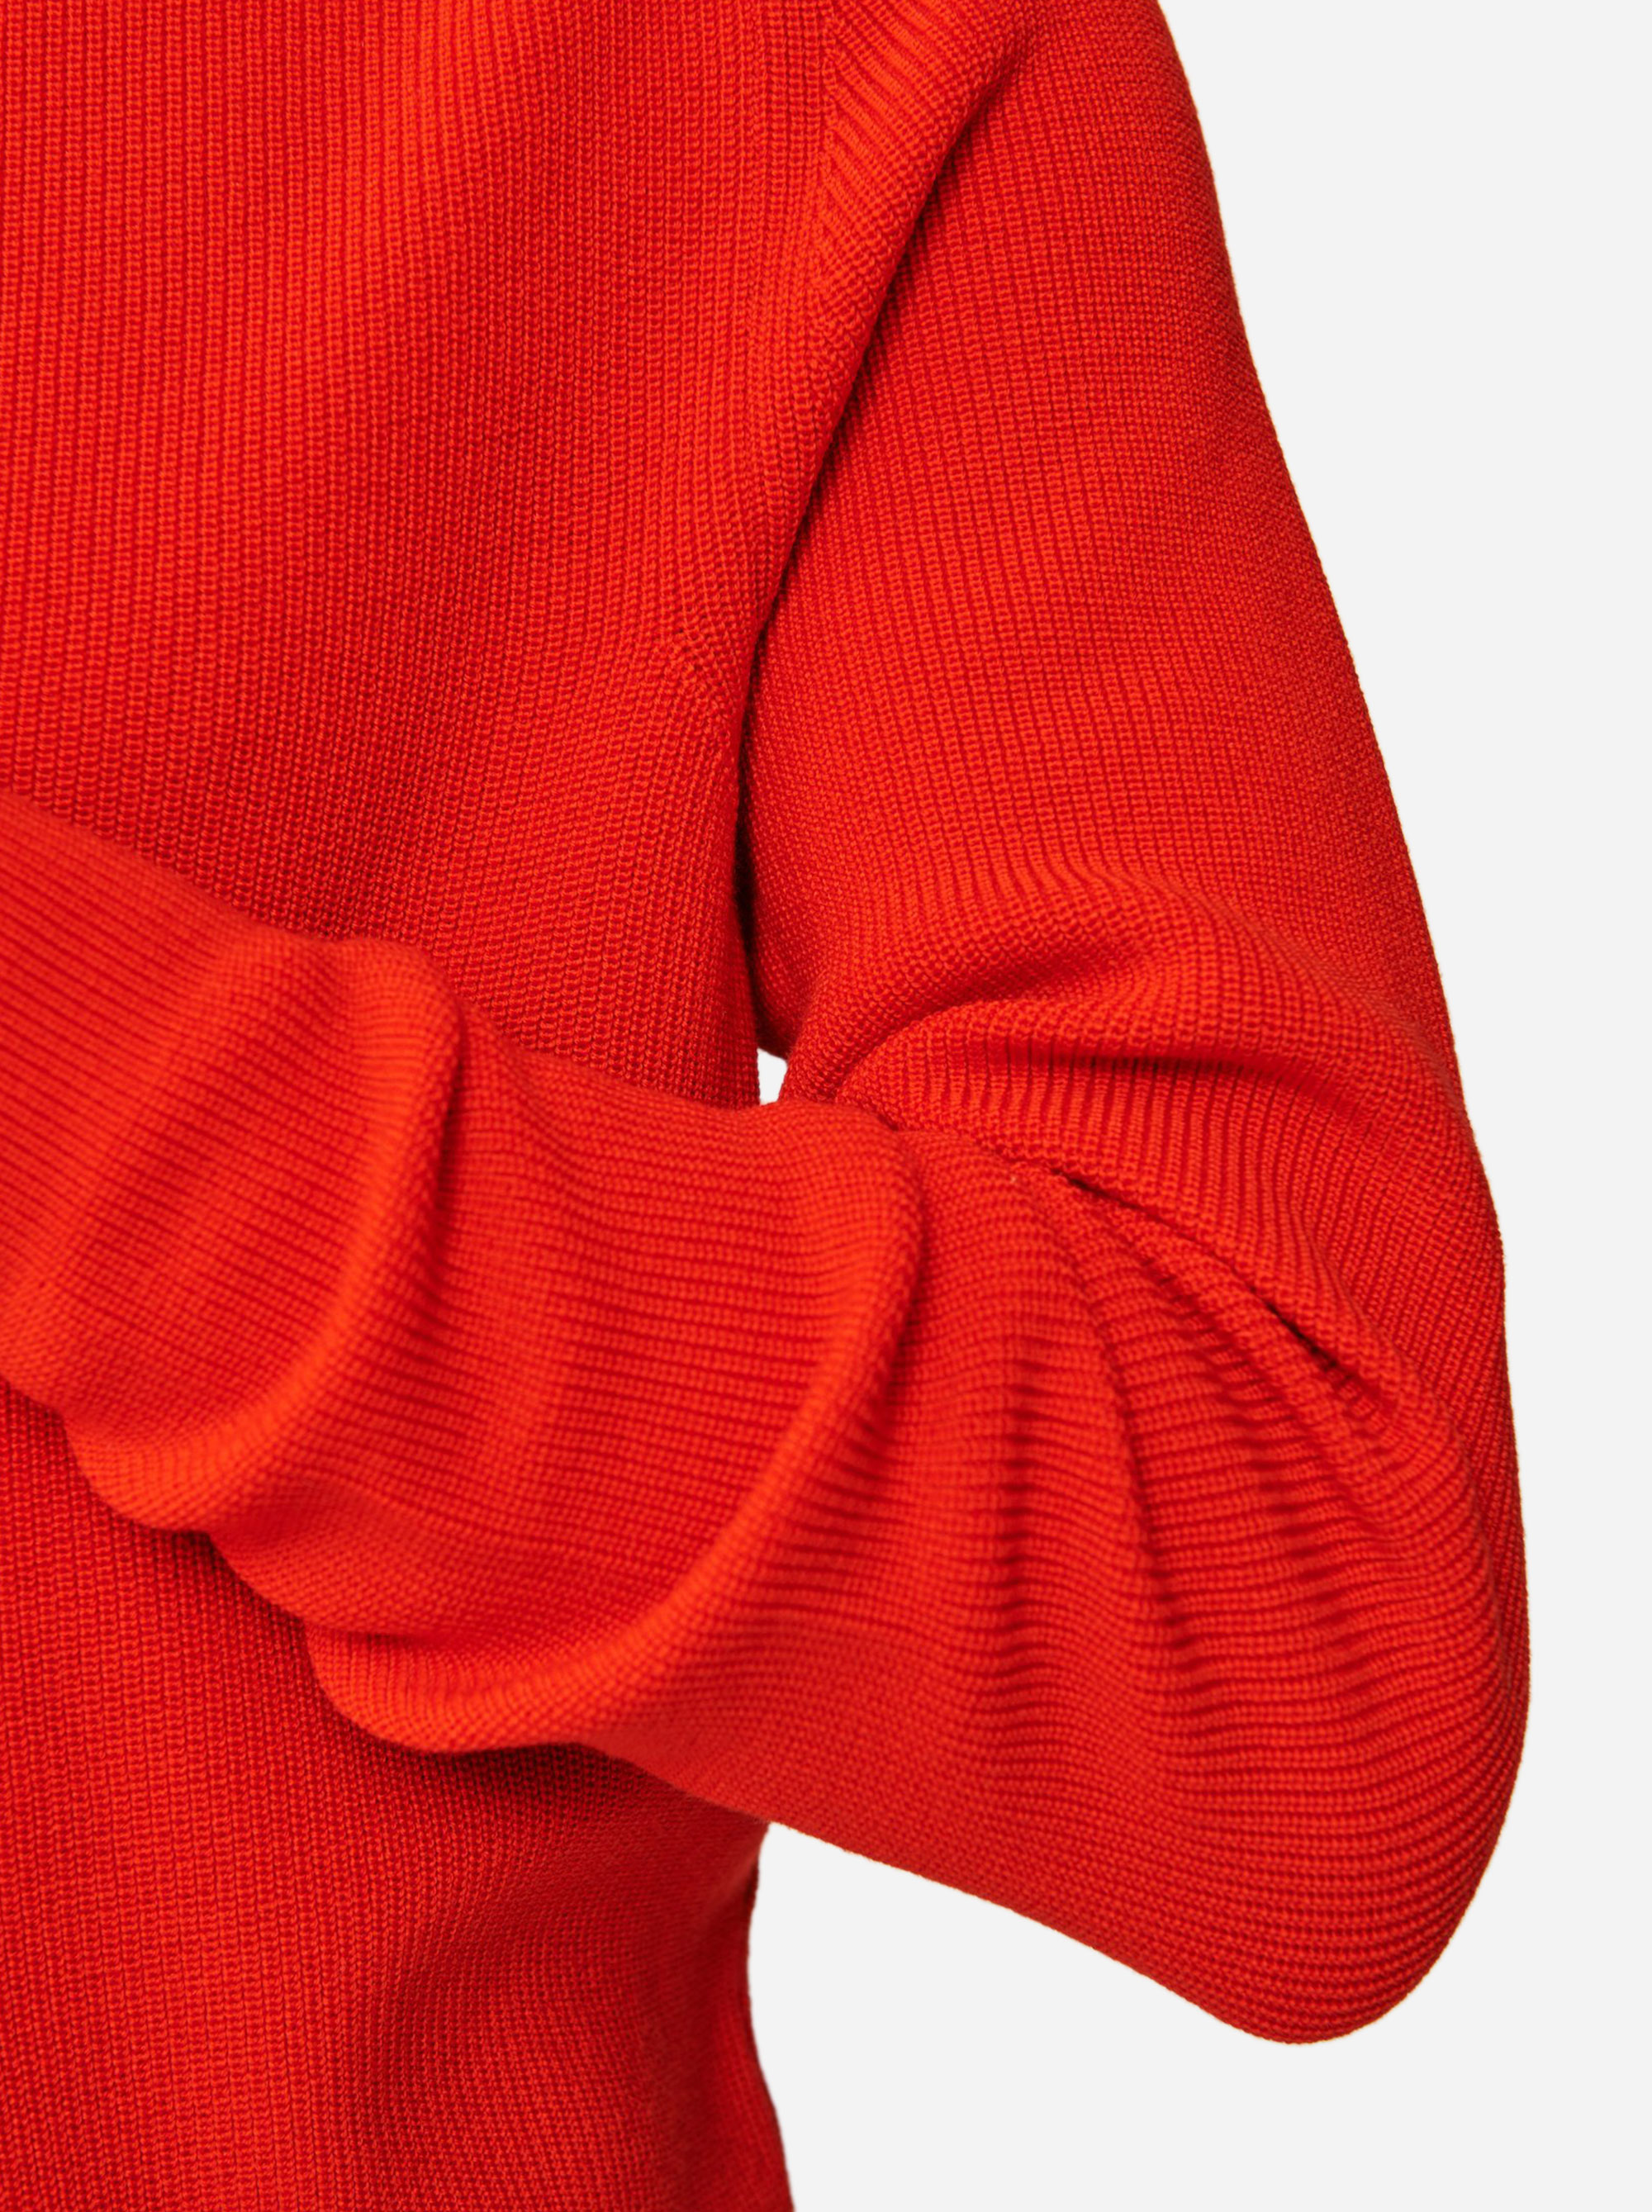 Teym - The Merino Sweater - Men - Red - 4